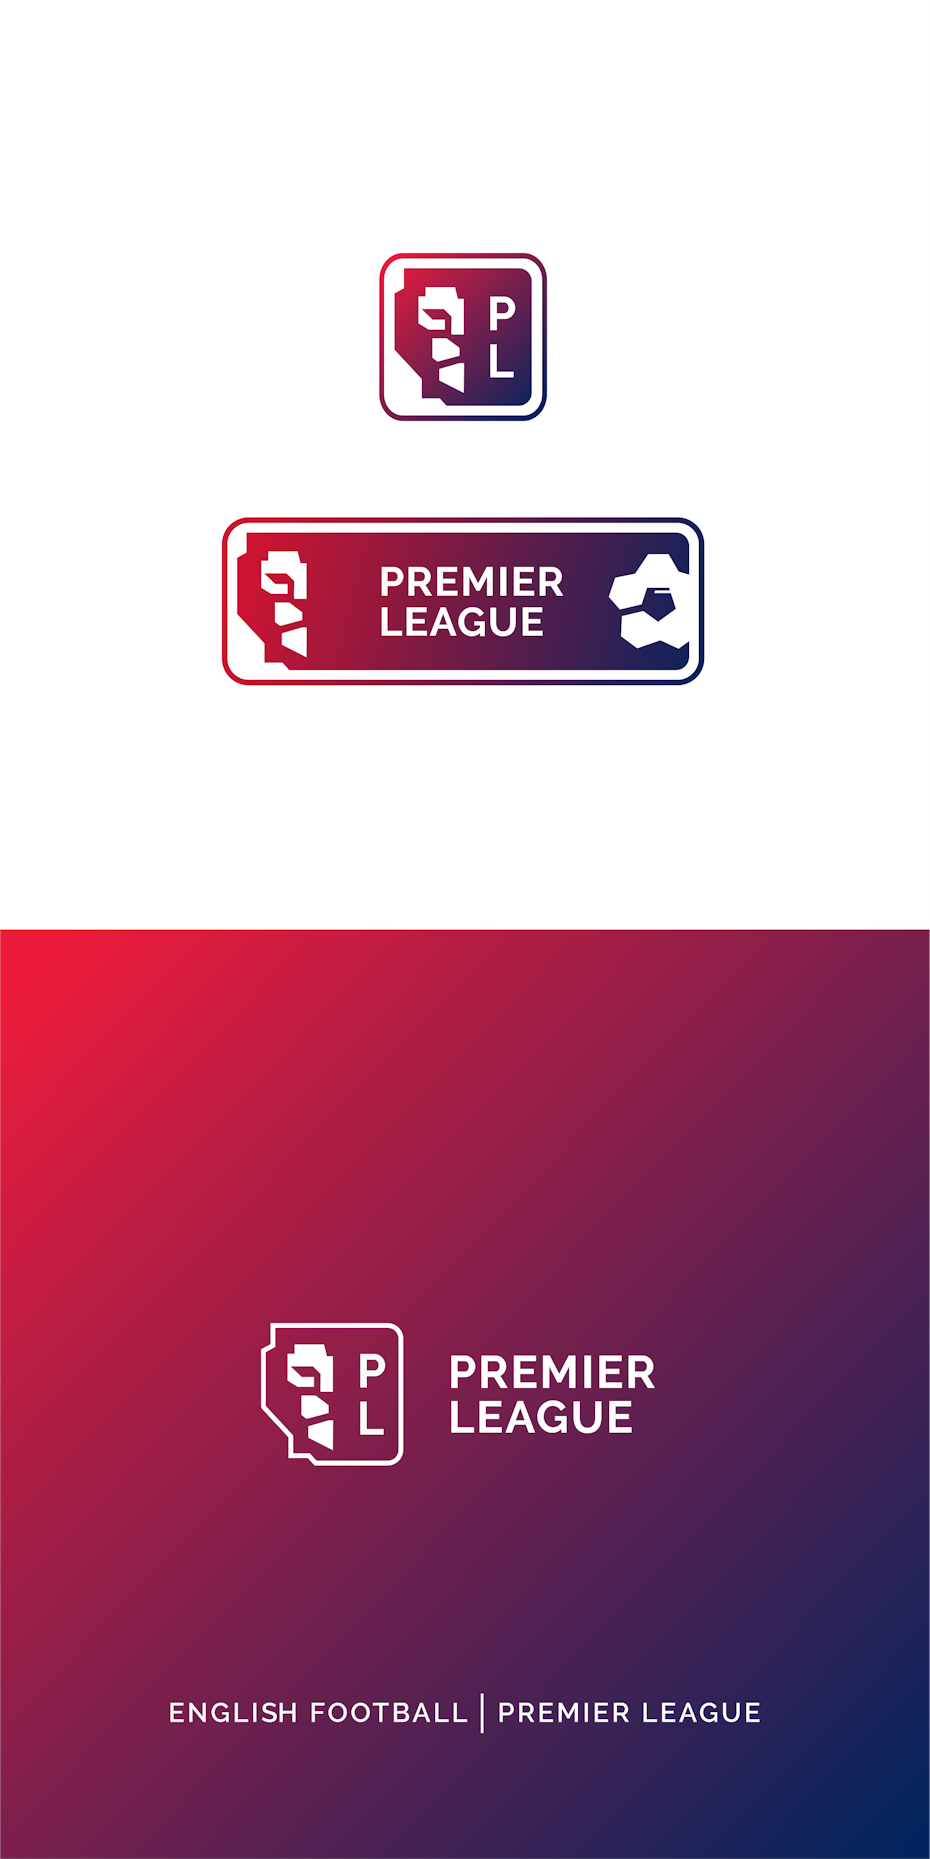 Premier League logo 2